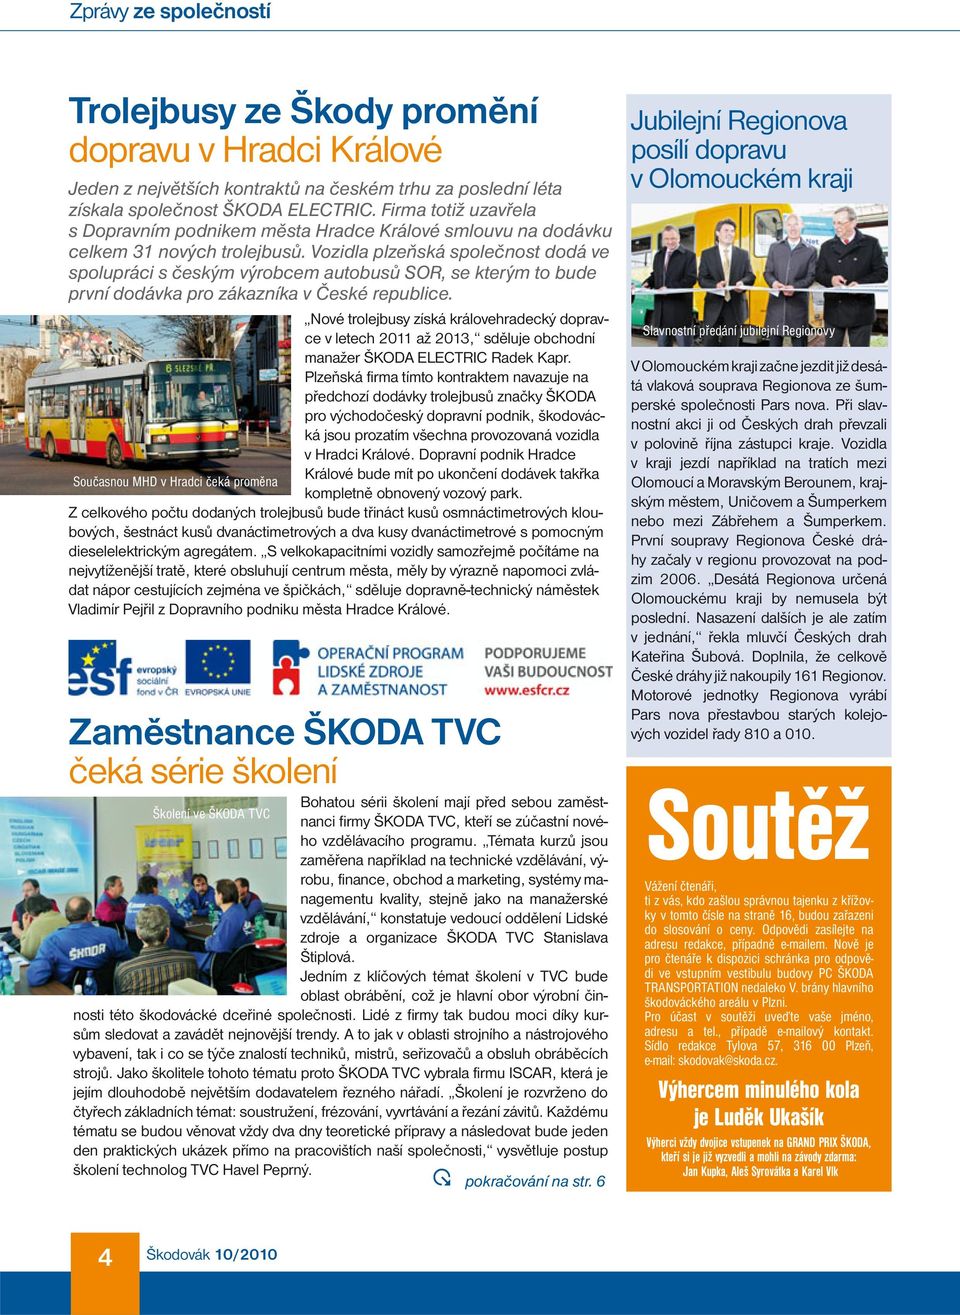 Vozidla plzeňská společnost dodá ve spolupráci s českým výrobcem autobusů SOR, se kterým to bude první dodávka pro zákazníka v České republice.